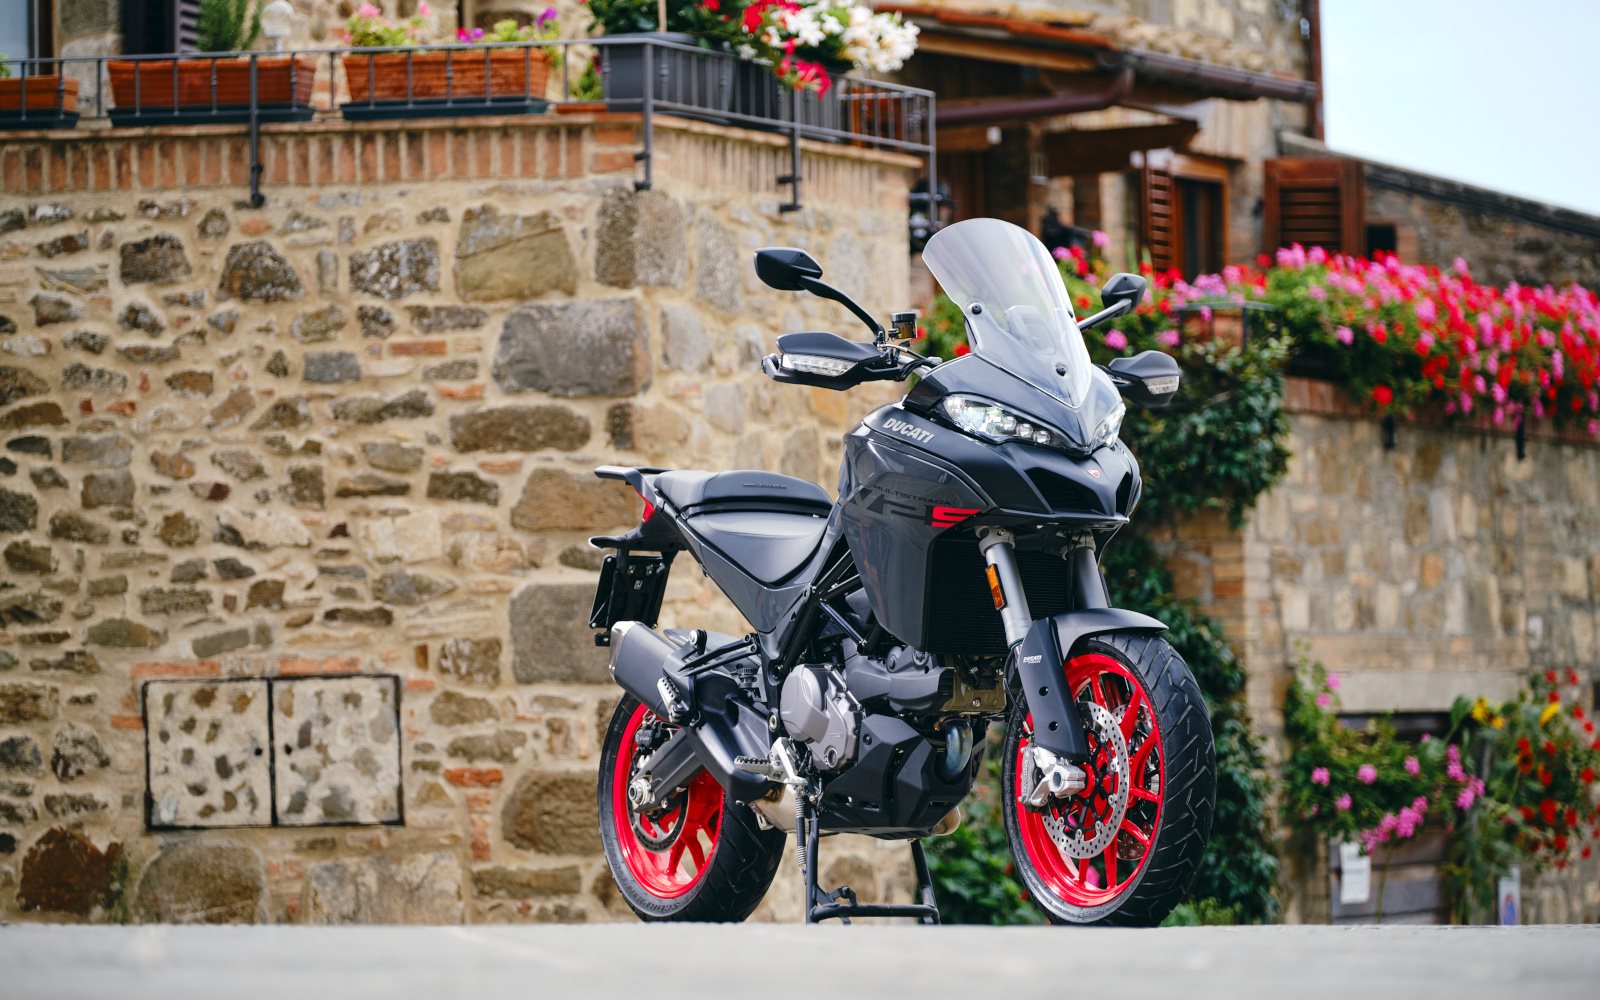 La financiación triple opción de Ducati Financial Services que además te puede regalar el mantenimiento programado de tu Ducati.
<br>La cambio, me la quedo o la devuelvo.